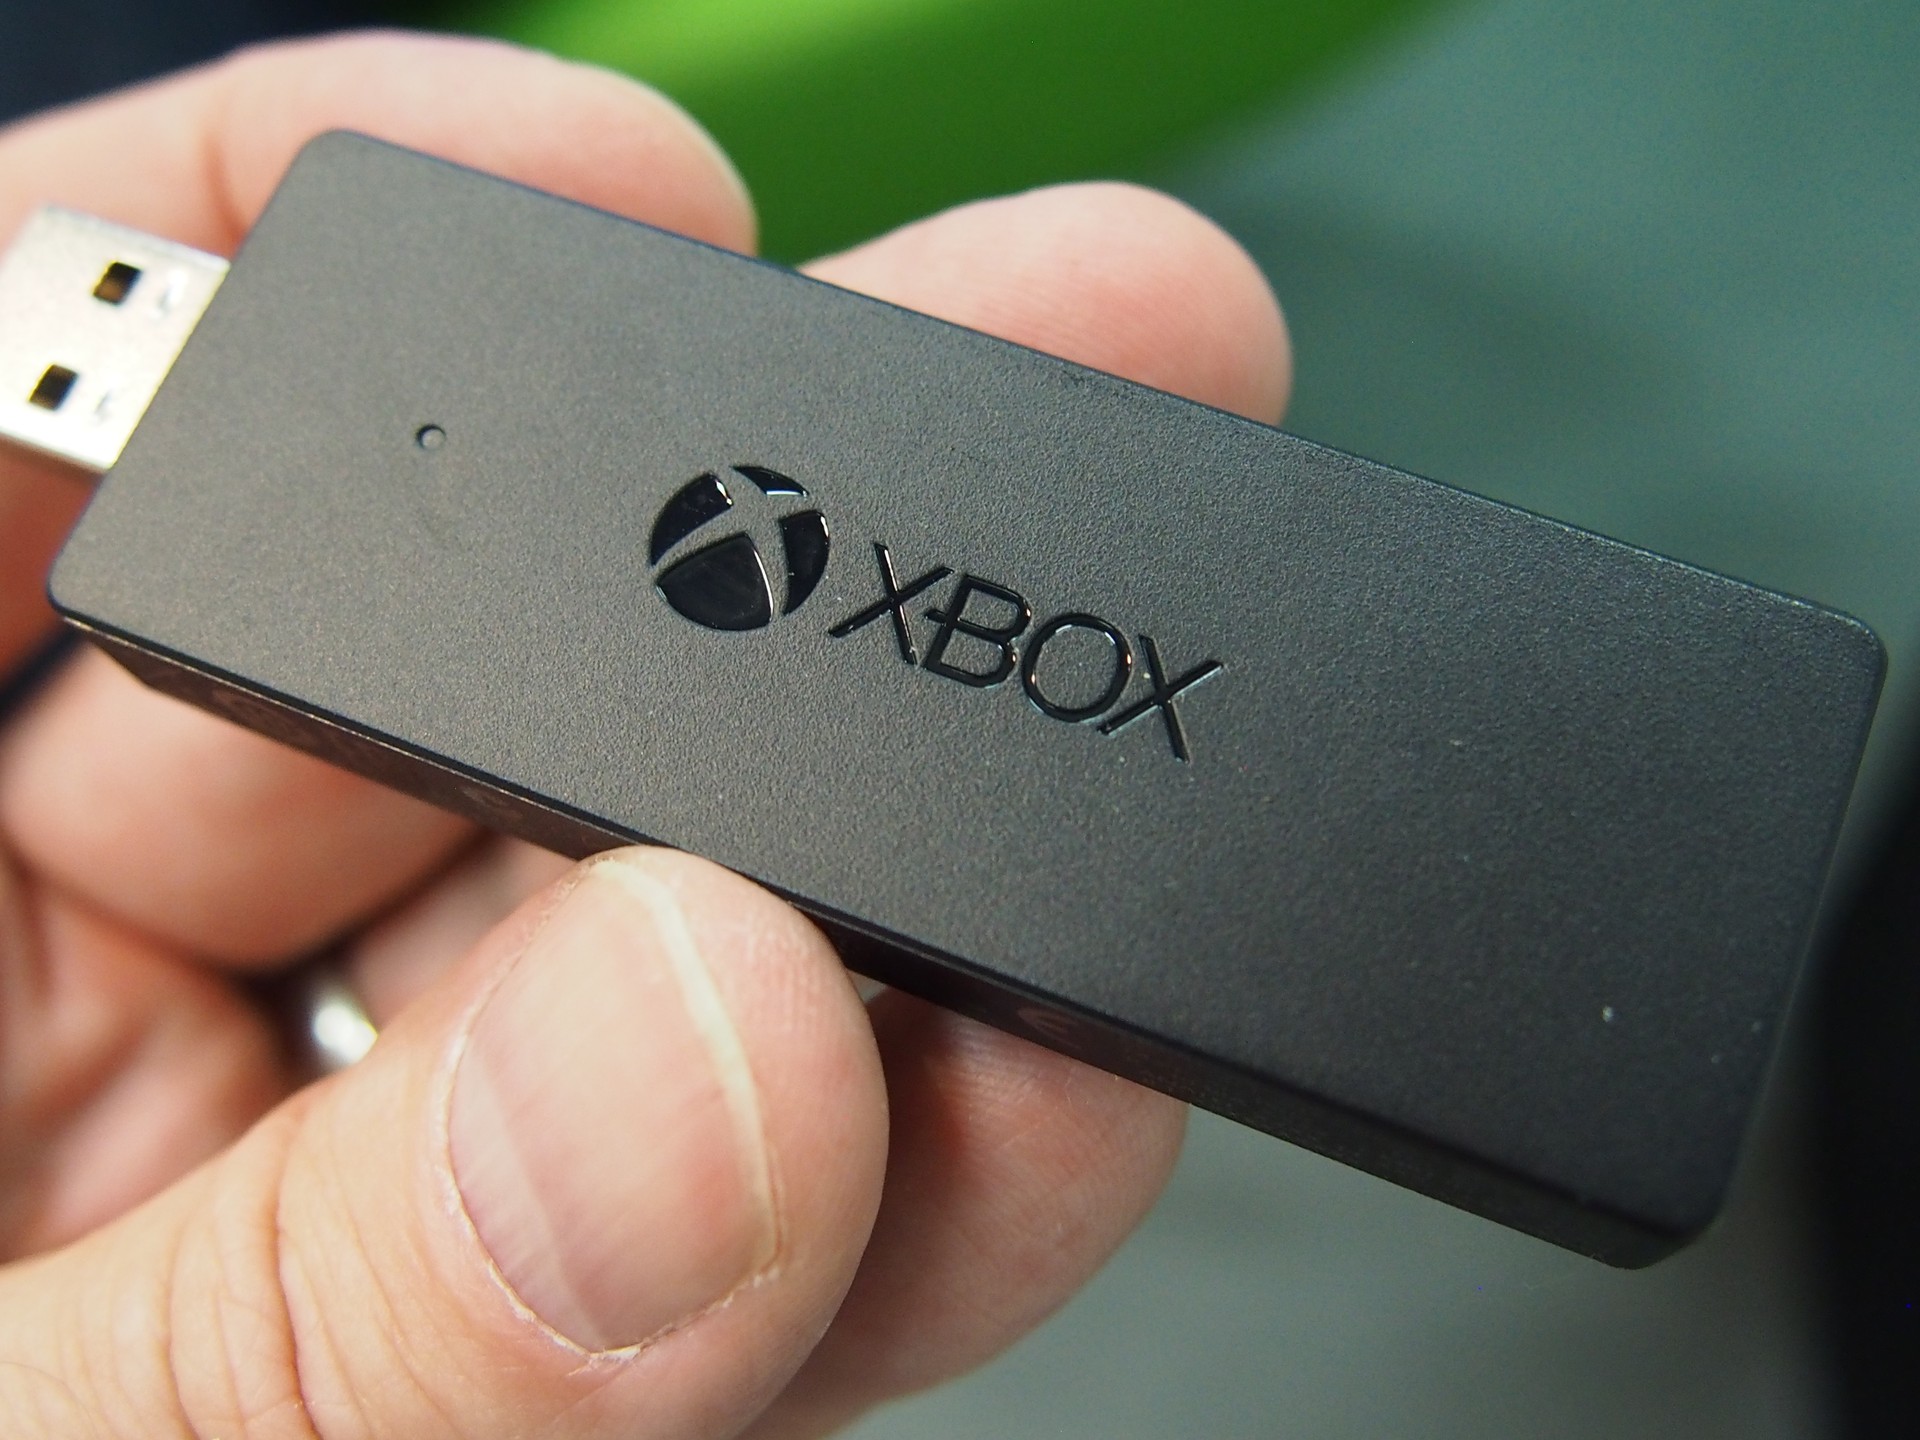 Como conectar um controle de Xbox One no PC - Positivo do seu jeito